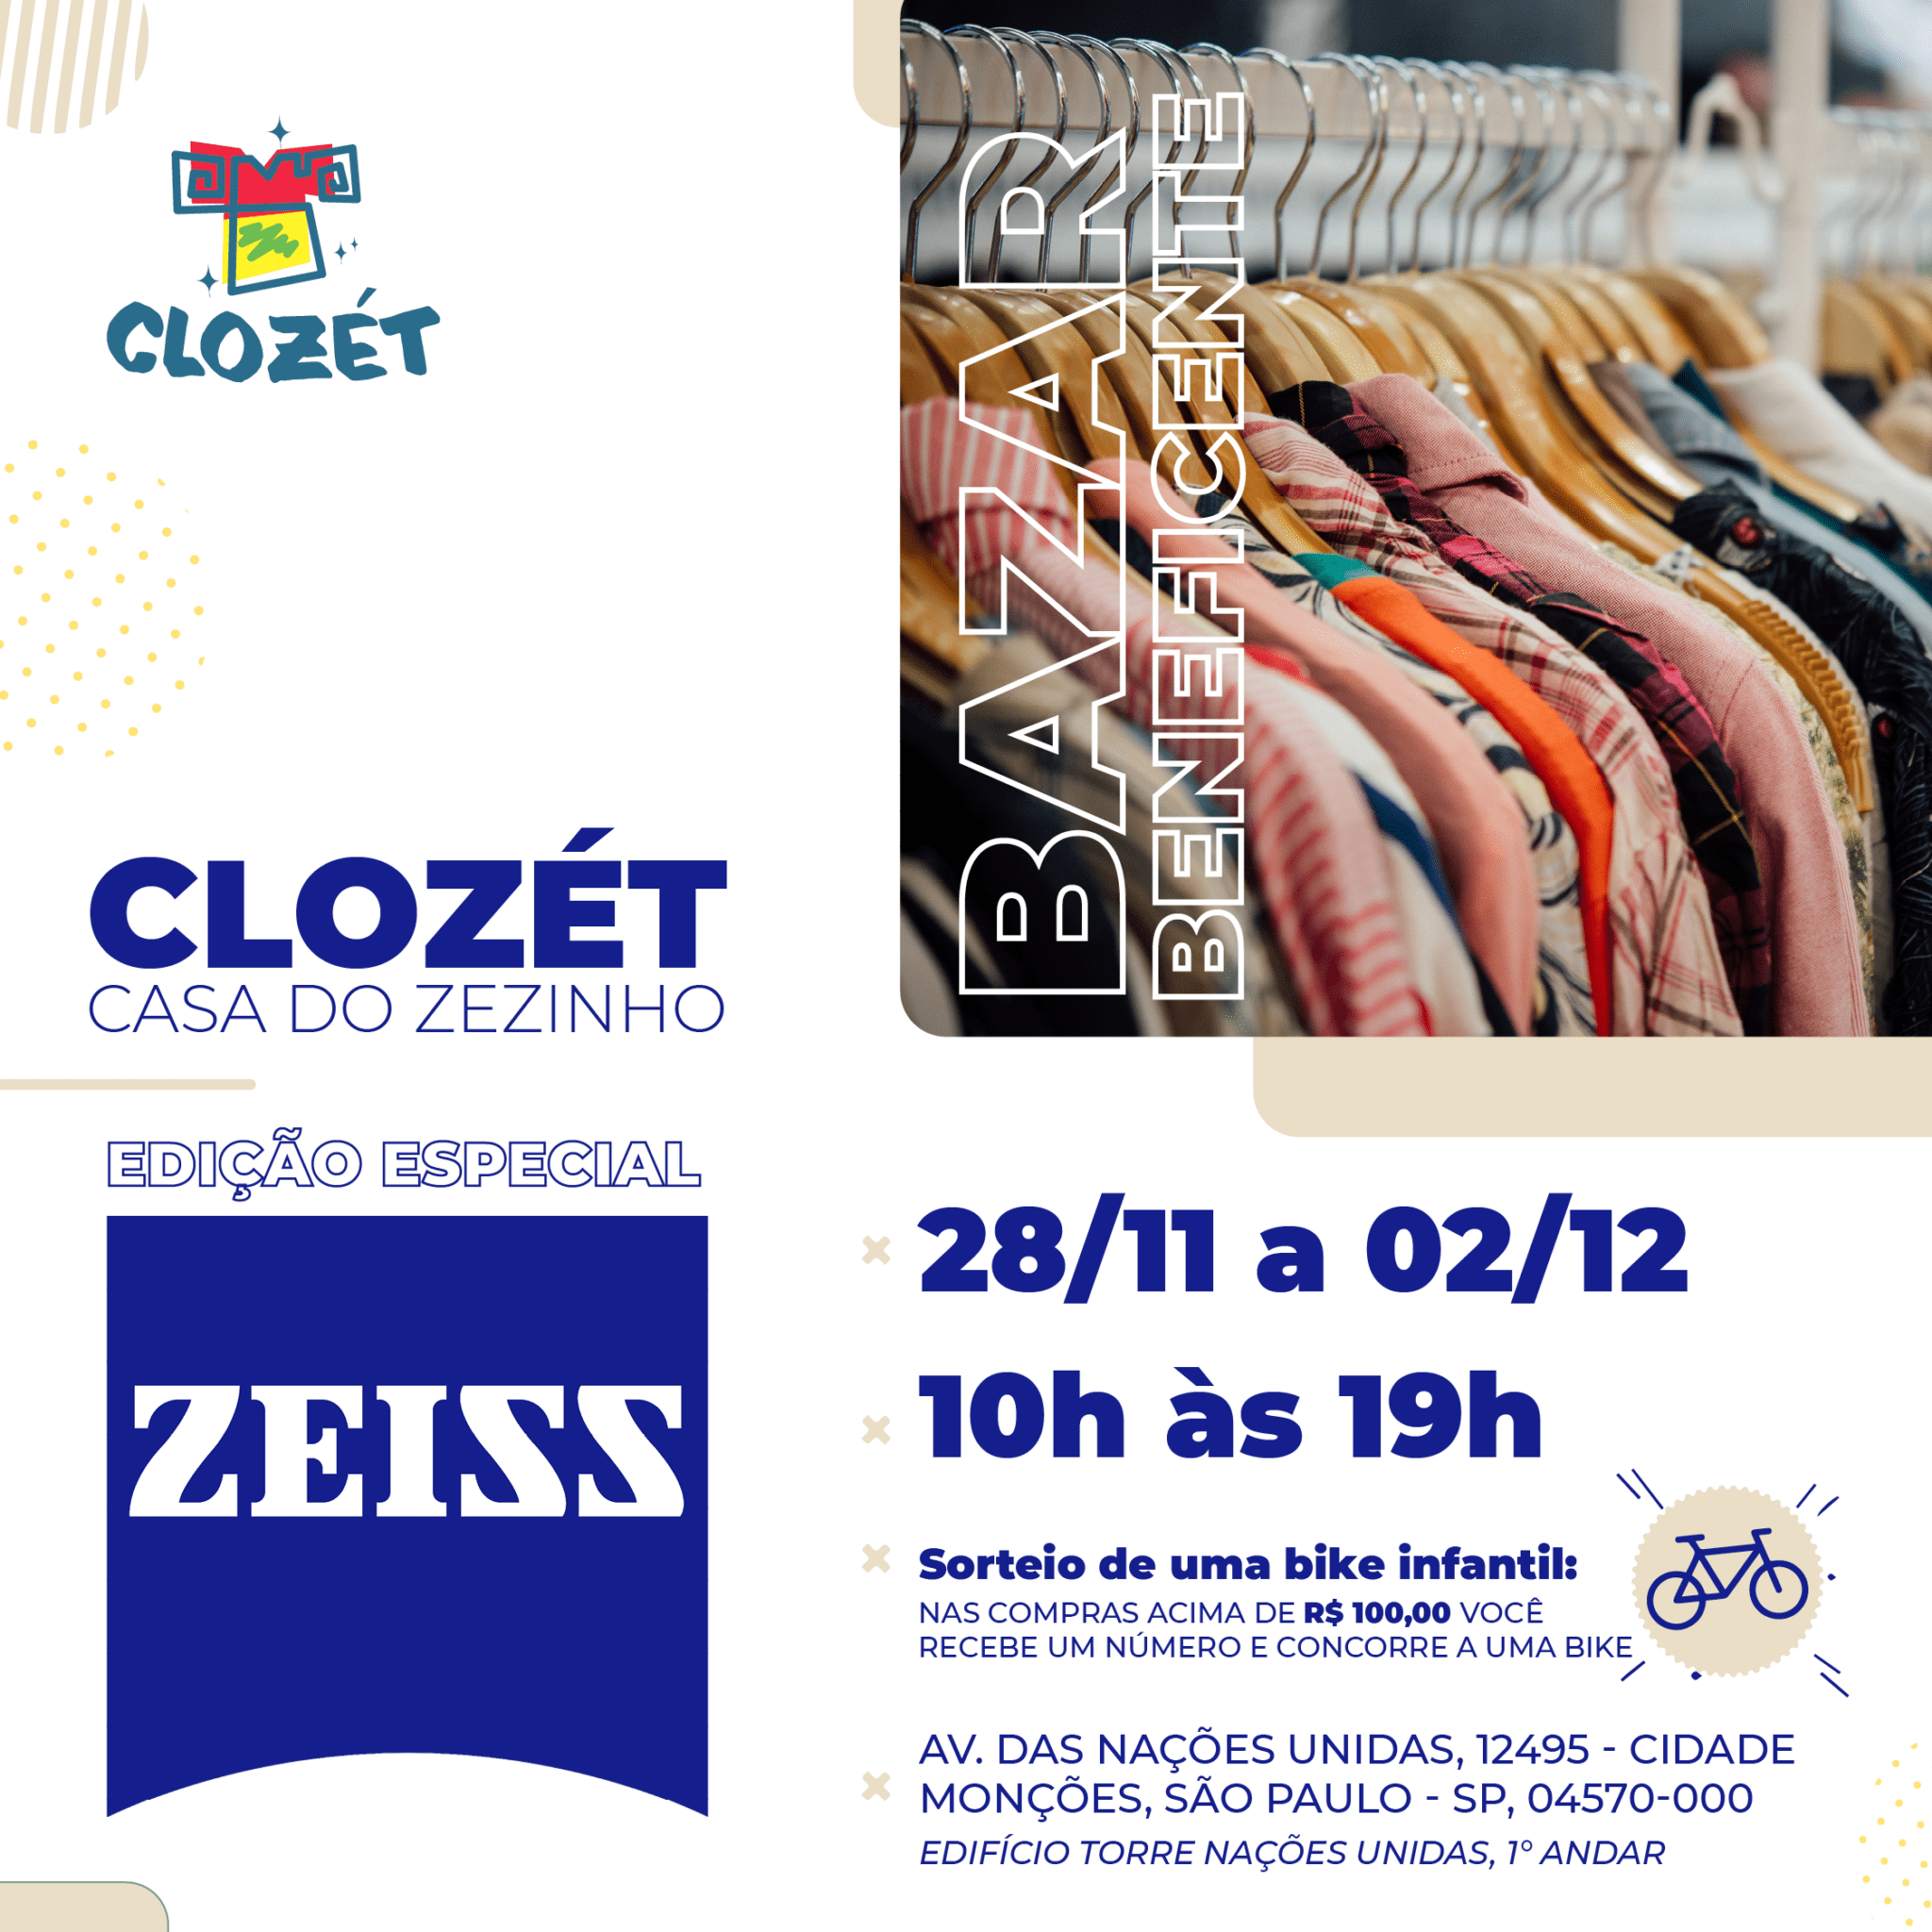 Bazar Clozét Casa do Zezinho Edição especial na Zeiss